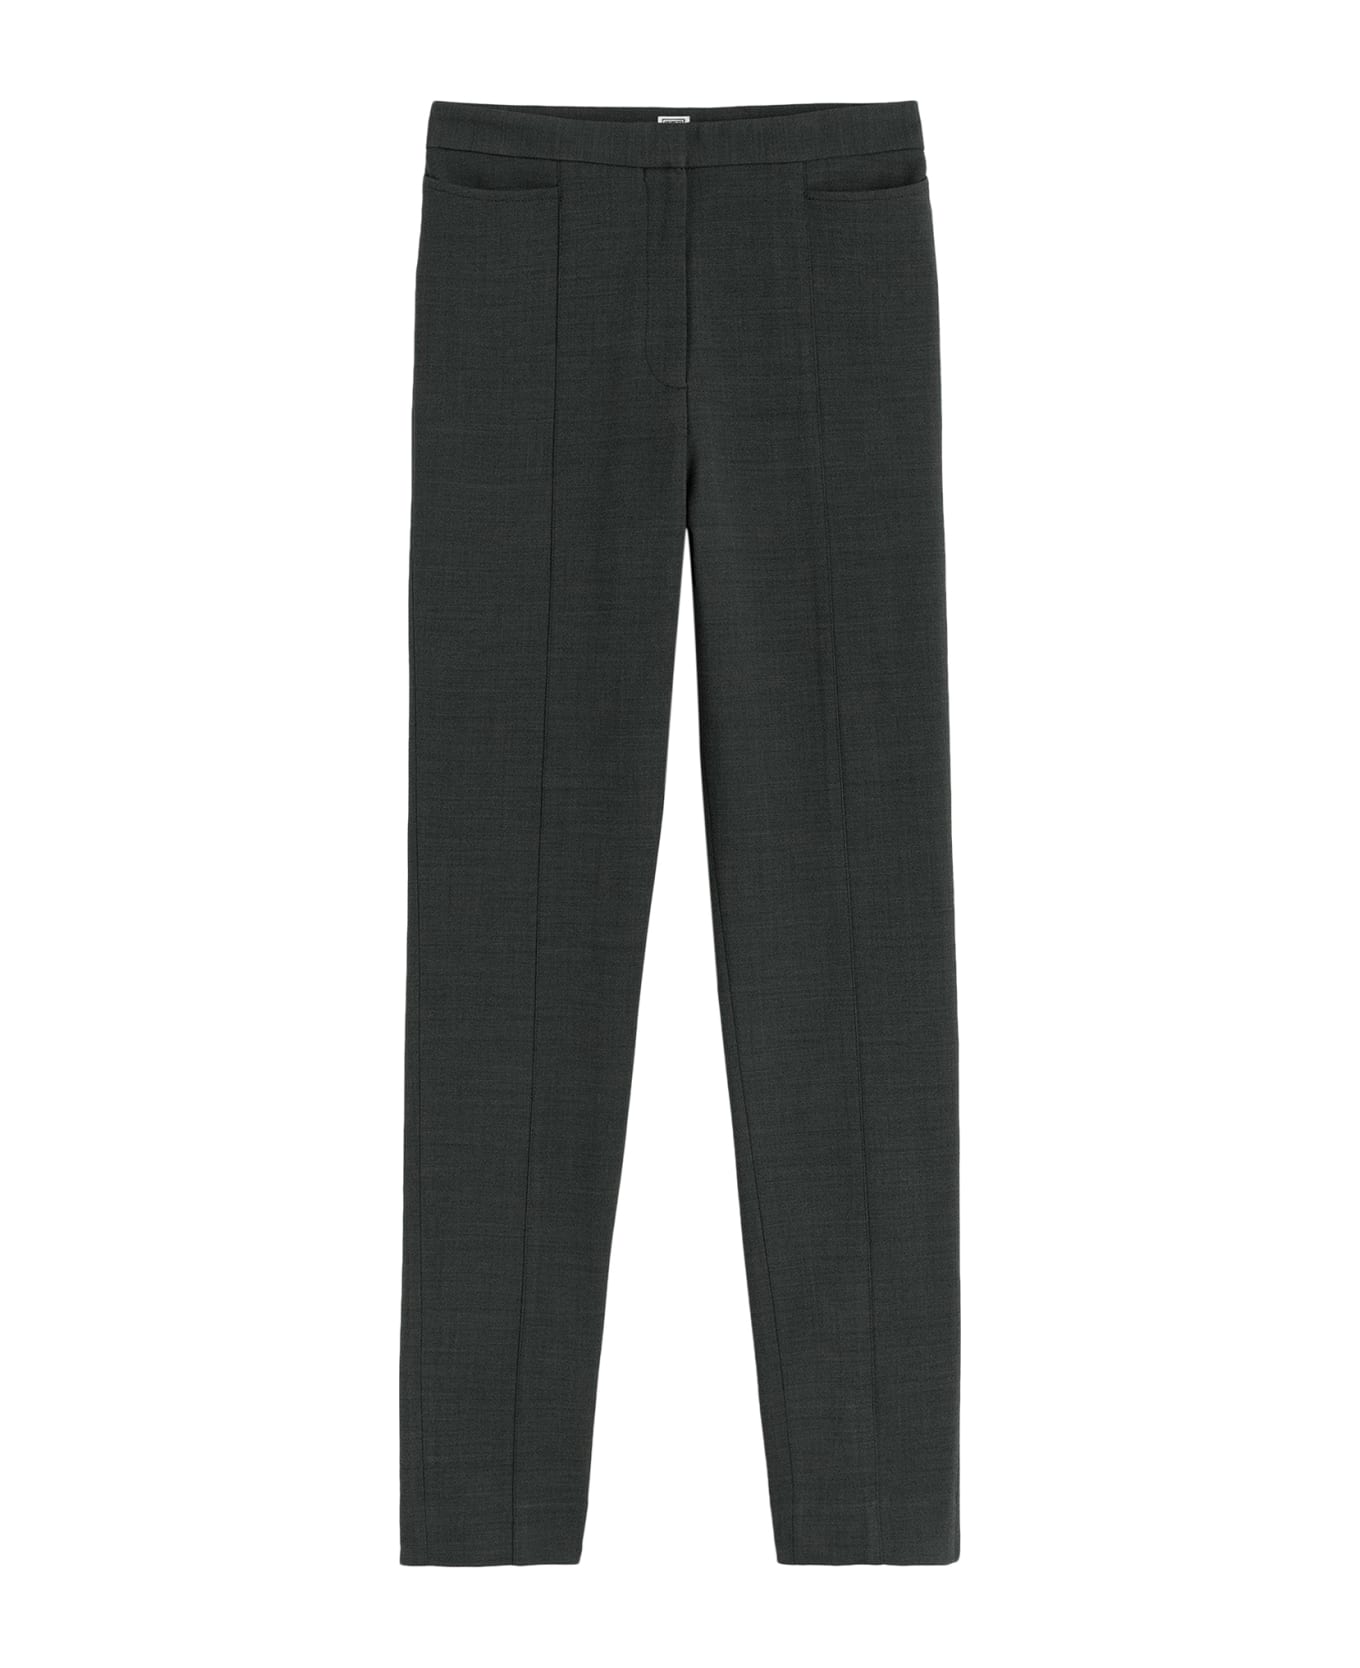 Totême Slim Crepe Suit Trousers - Charcoal Melange